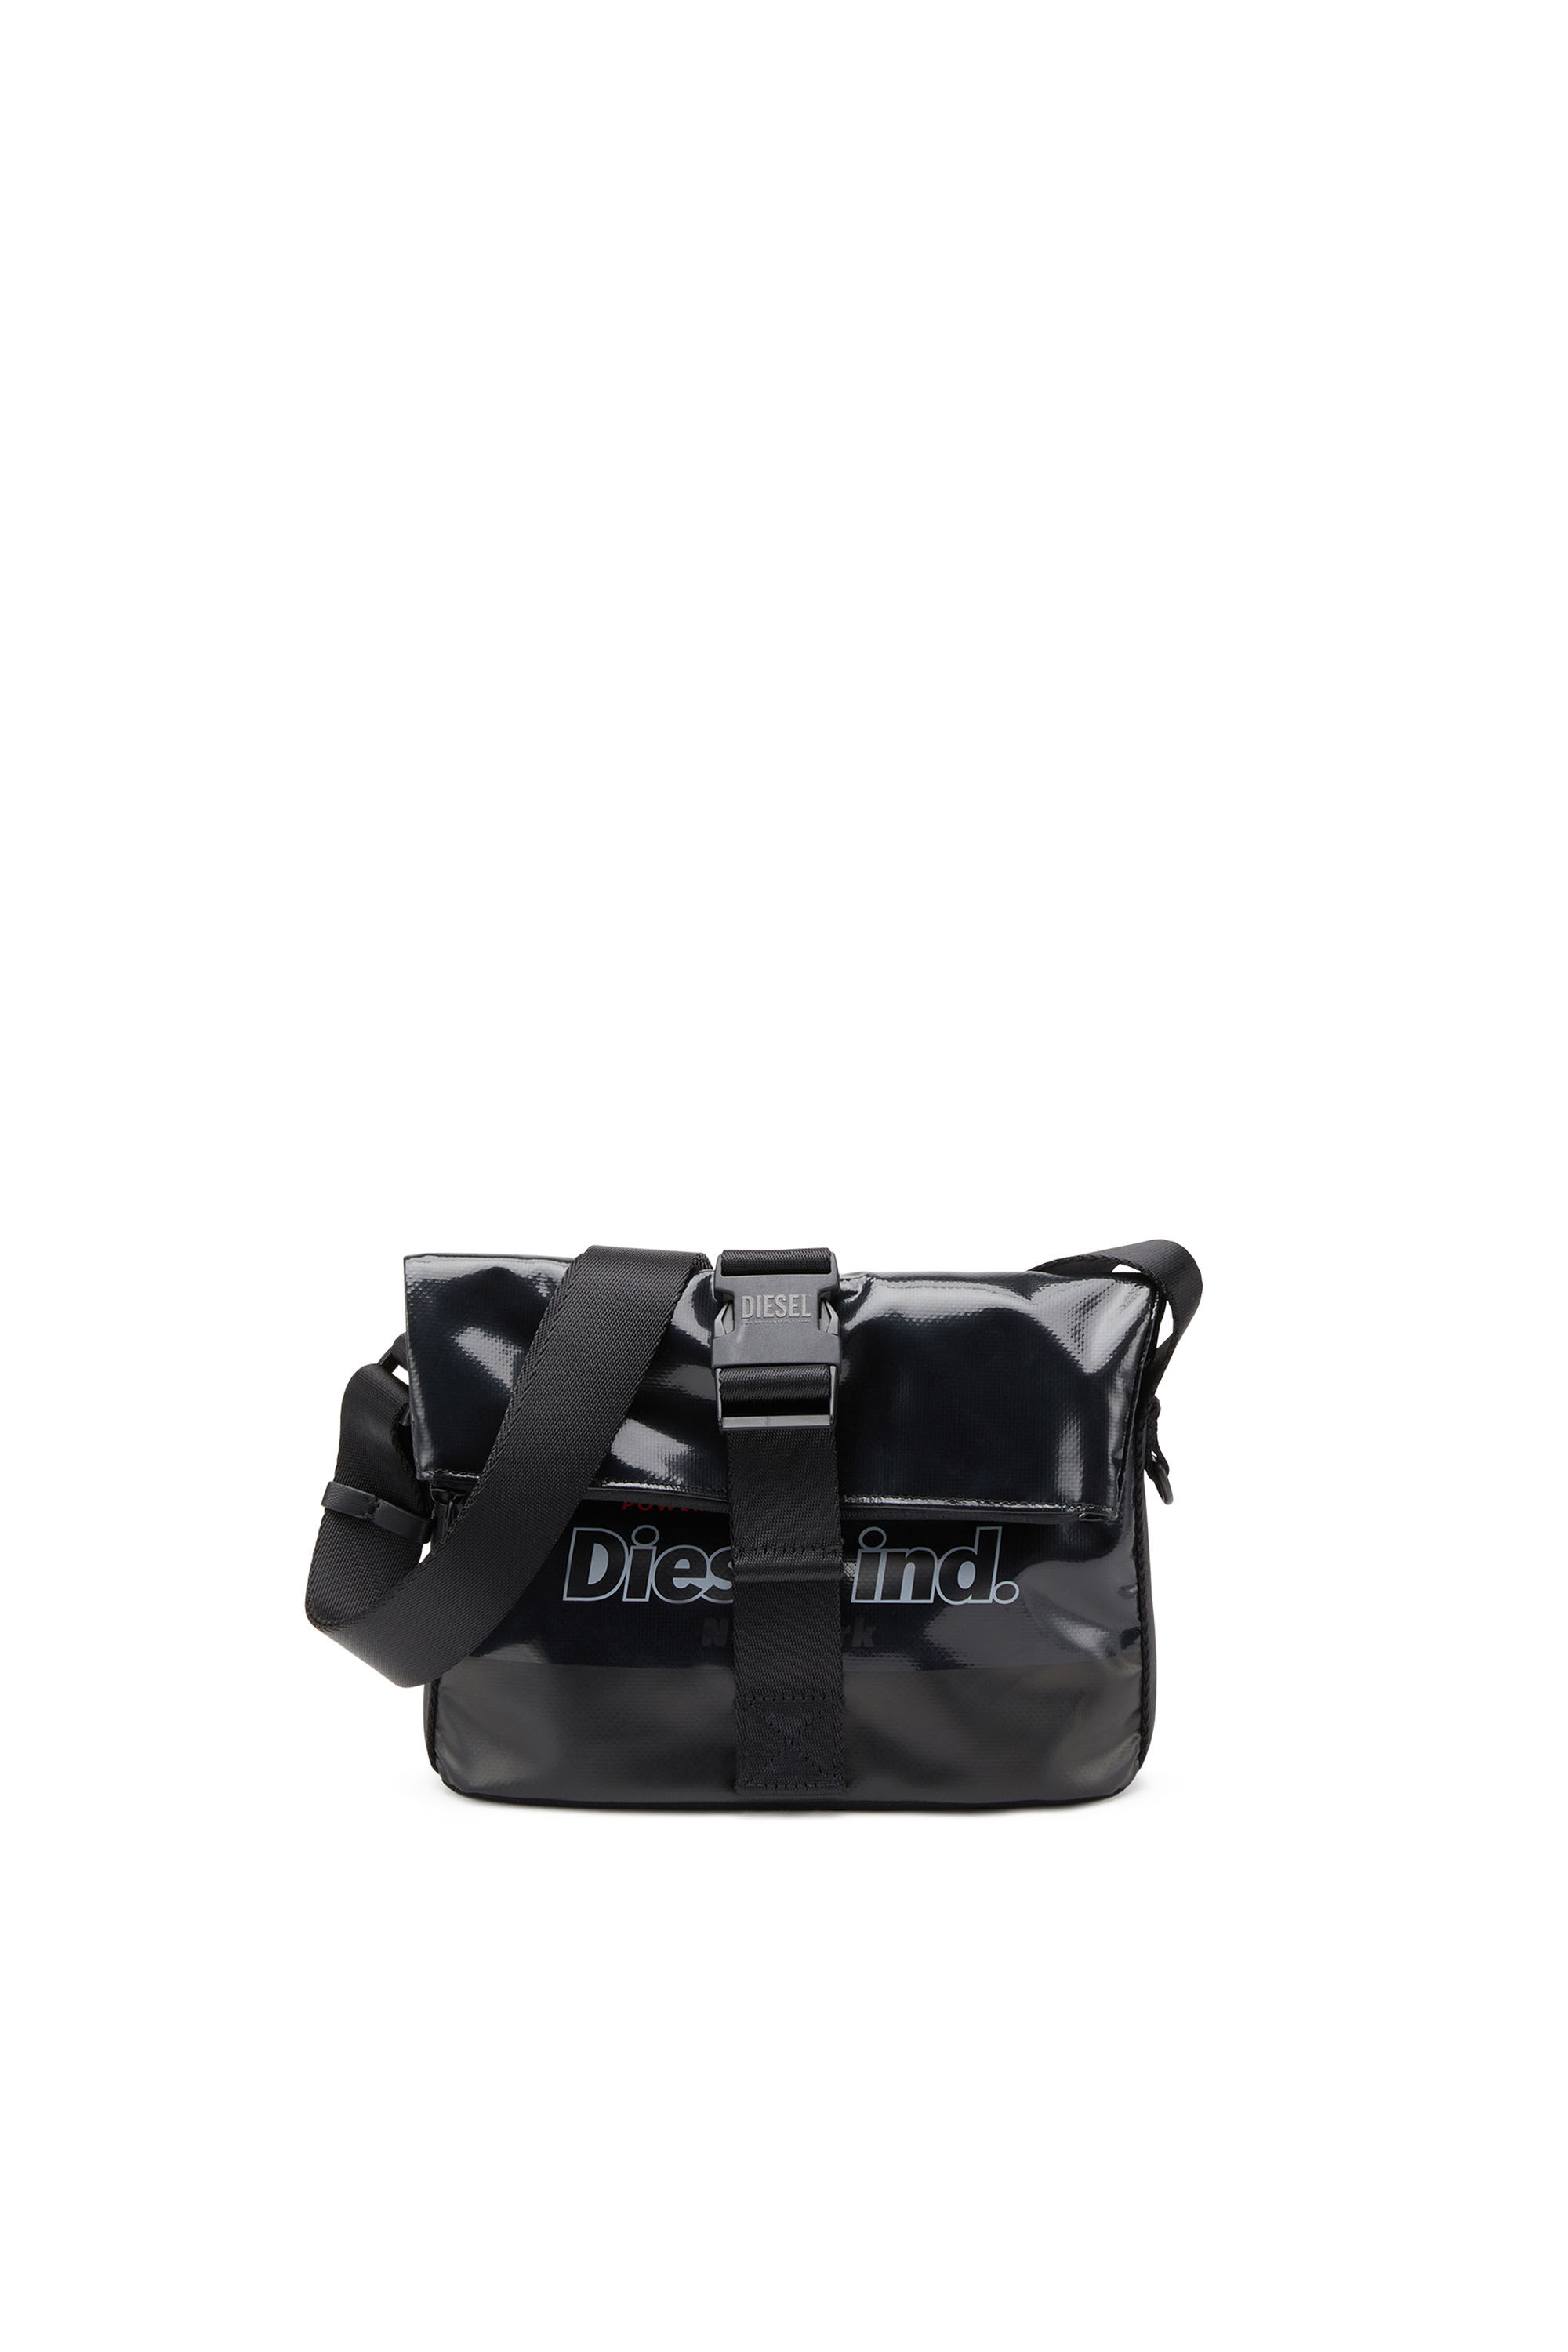 Diesel - TRAP/D SHOULDER BAG S, Noir - Image 2